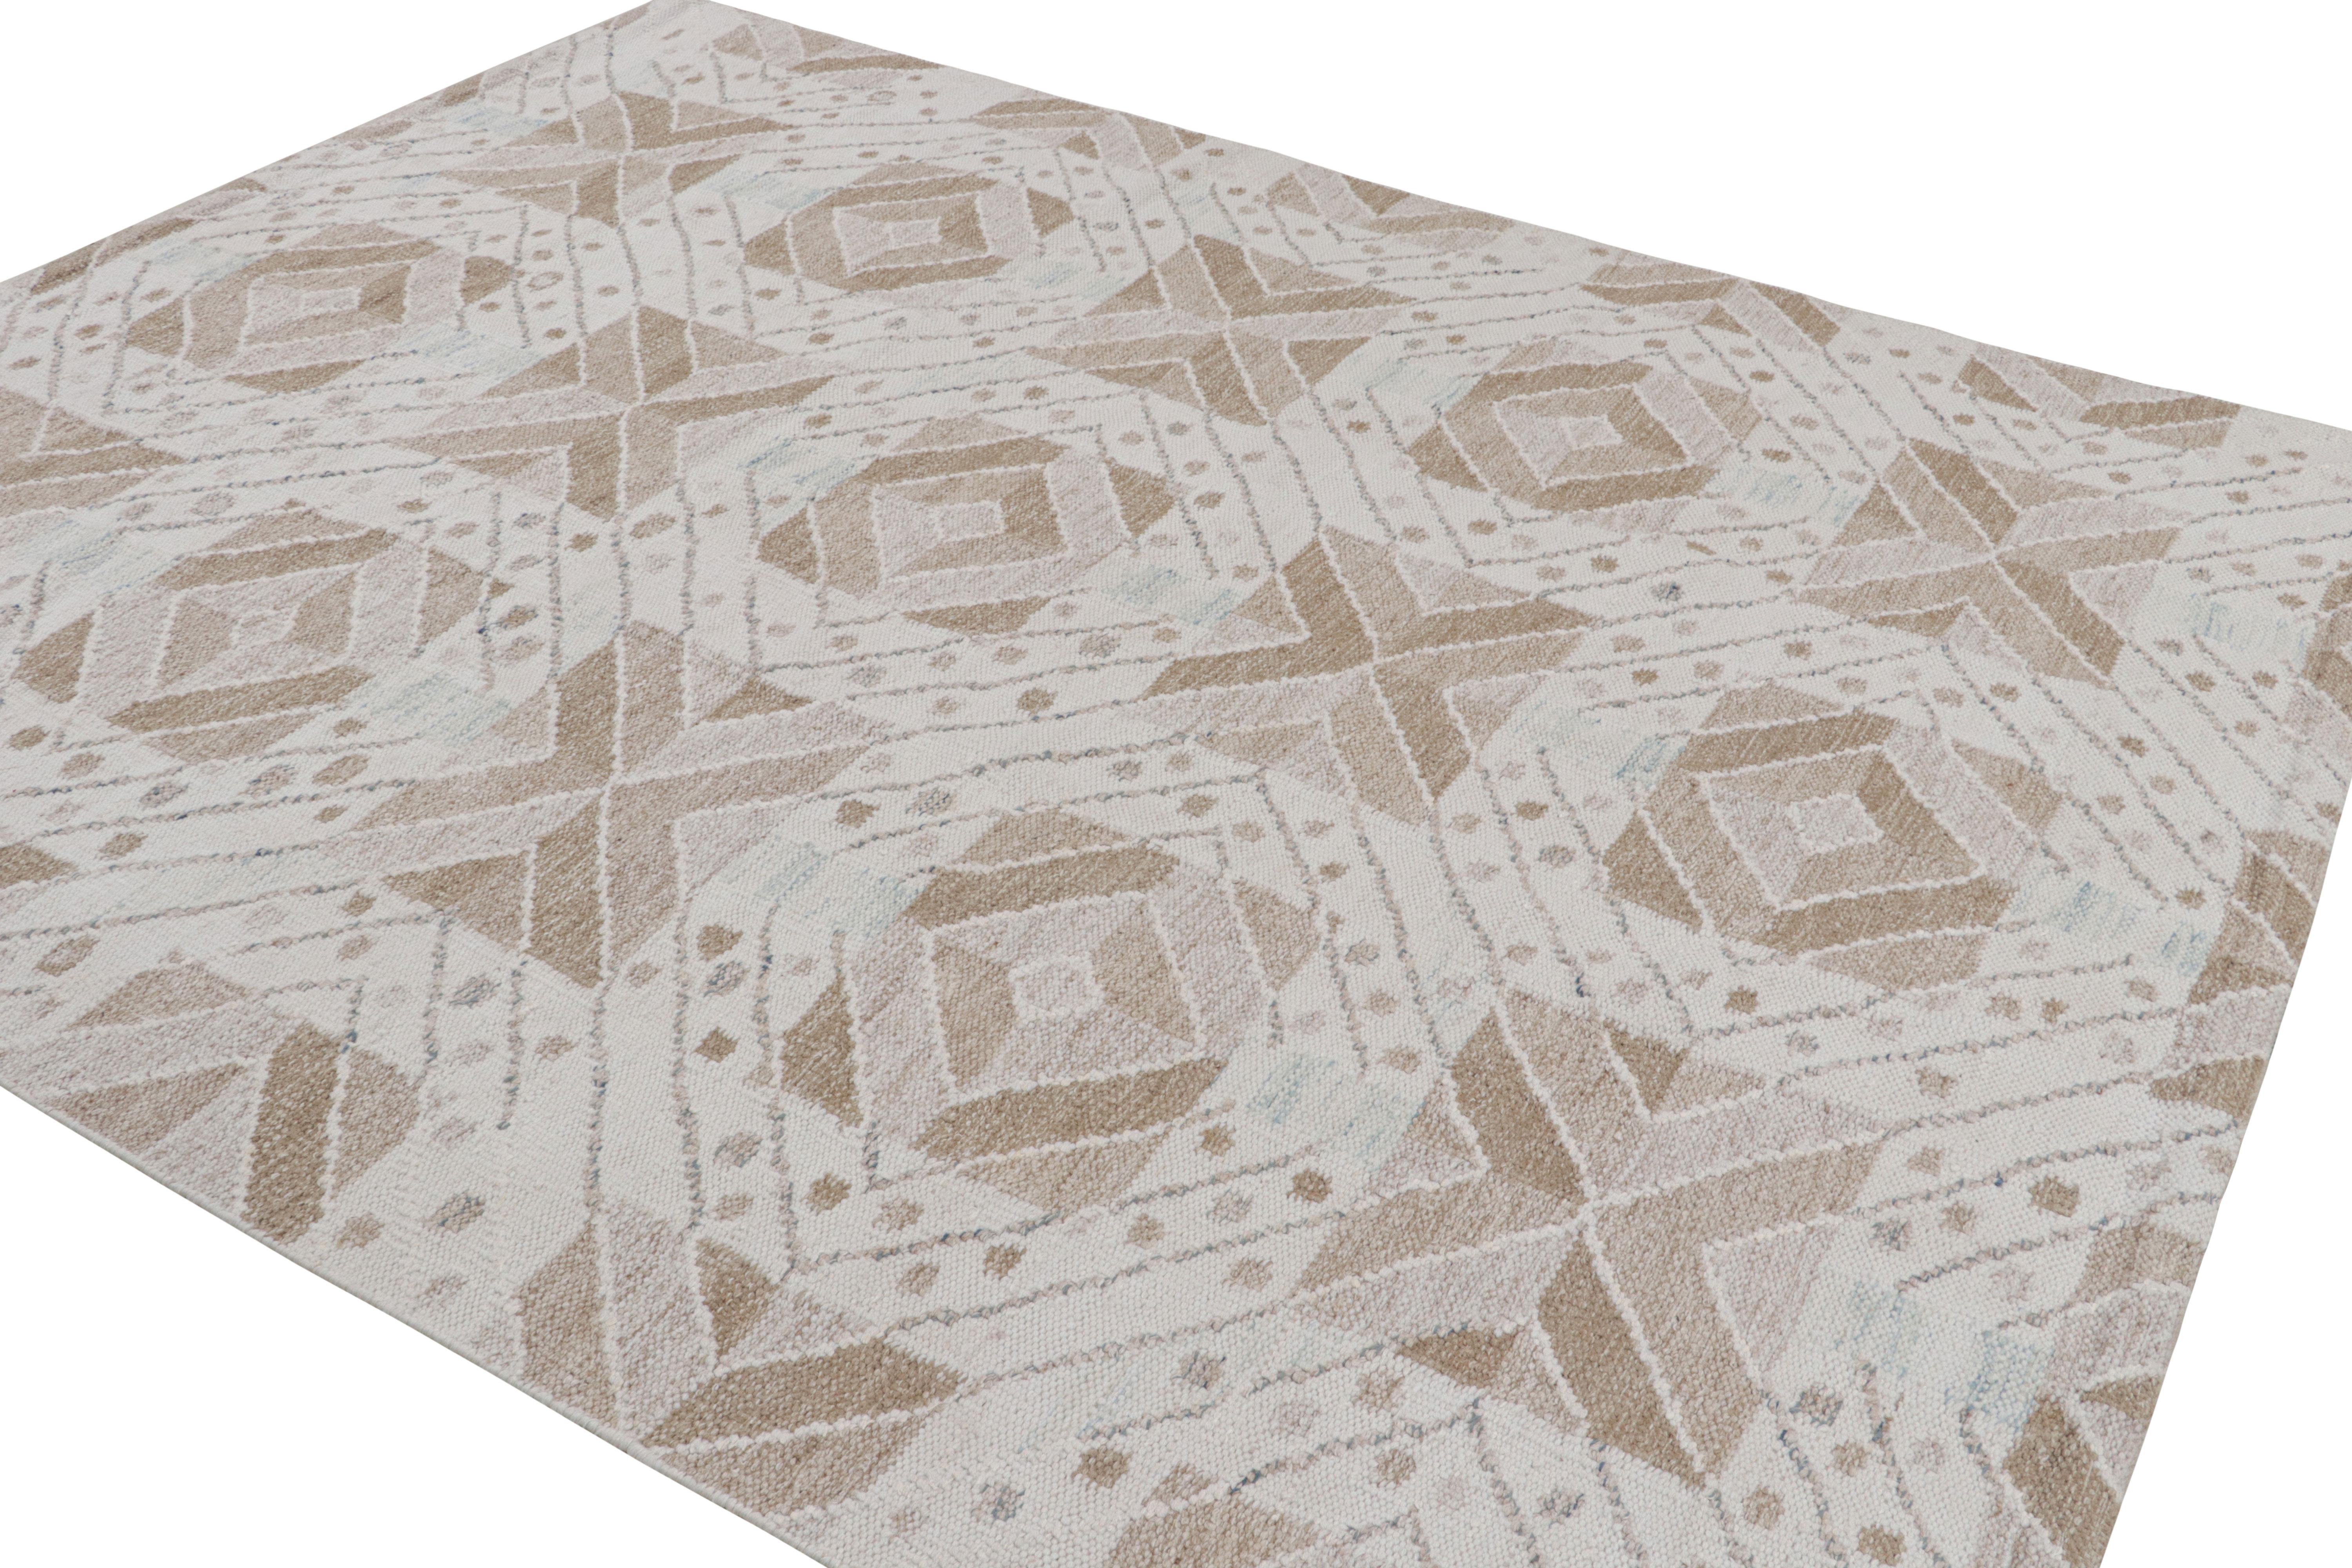 Dieser 8x10 große, handgewebte Flachgewebe-Teppich aus Wolle ist eine neue Ergänzung unserer skandinavischen Kollektion - eine elegante neue Darstellung schwedischen minimalistischen Teppichdesigns. 

Über das Design: 

Diese Fotos zeigen einen